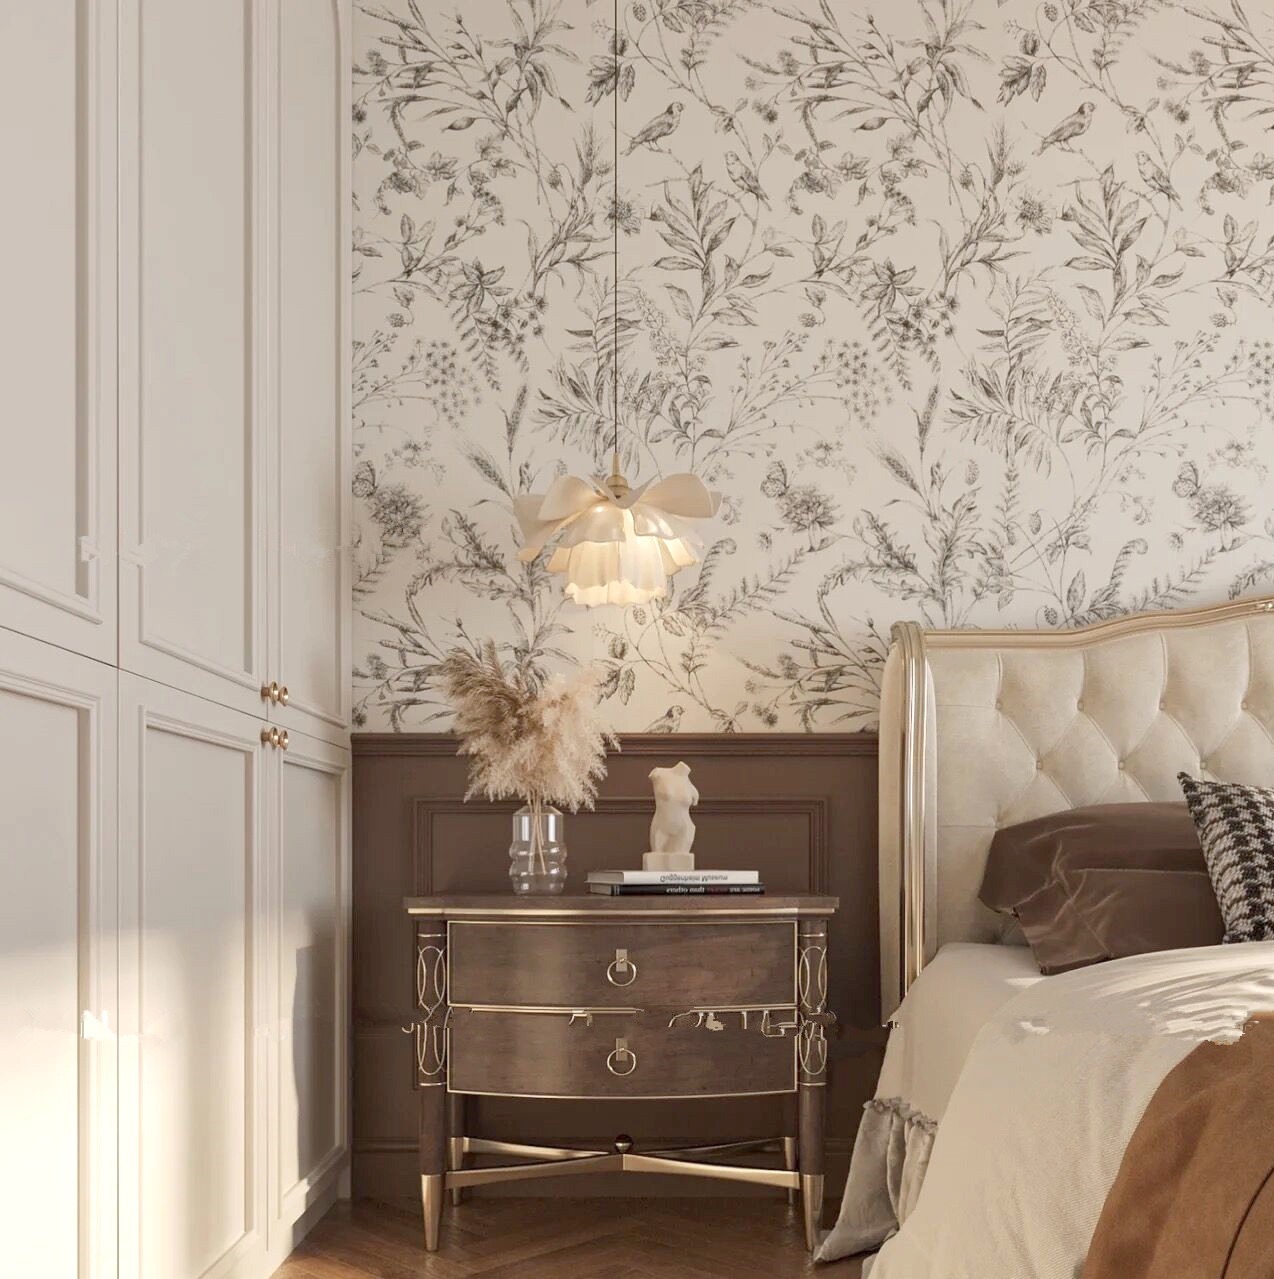 法式复古风卧室壁纸黑白花鸟墙纸美式田园墙壁布北欧简约无缝壁画